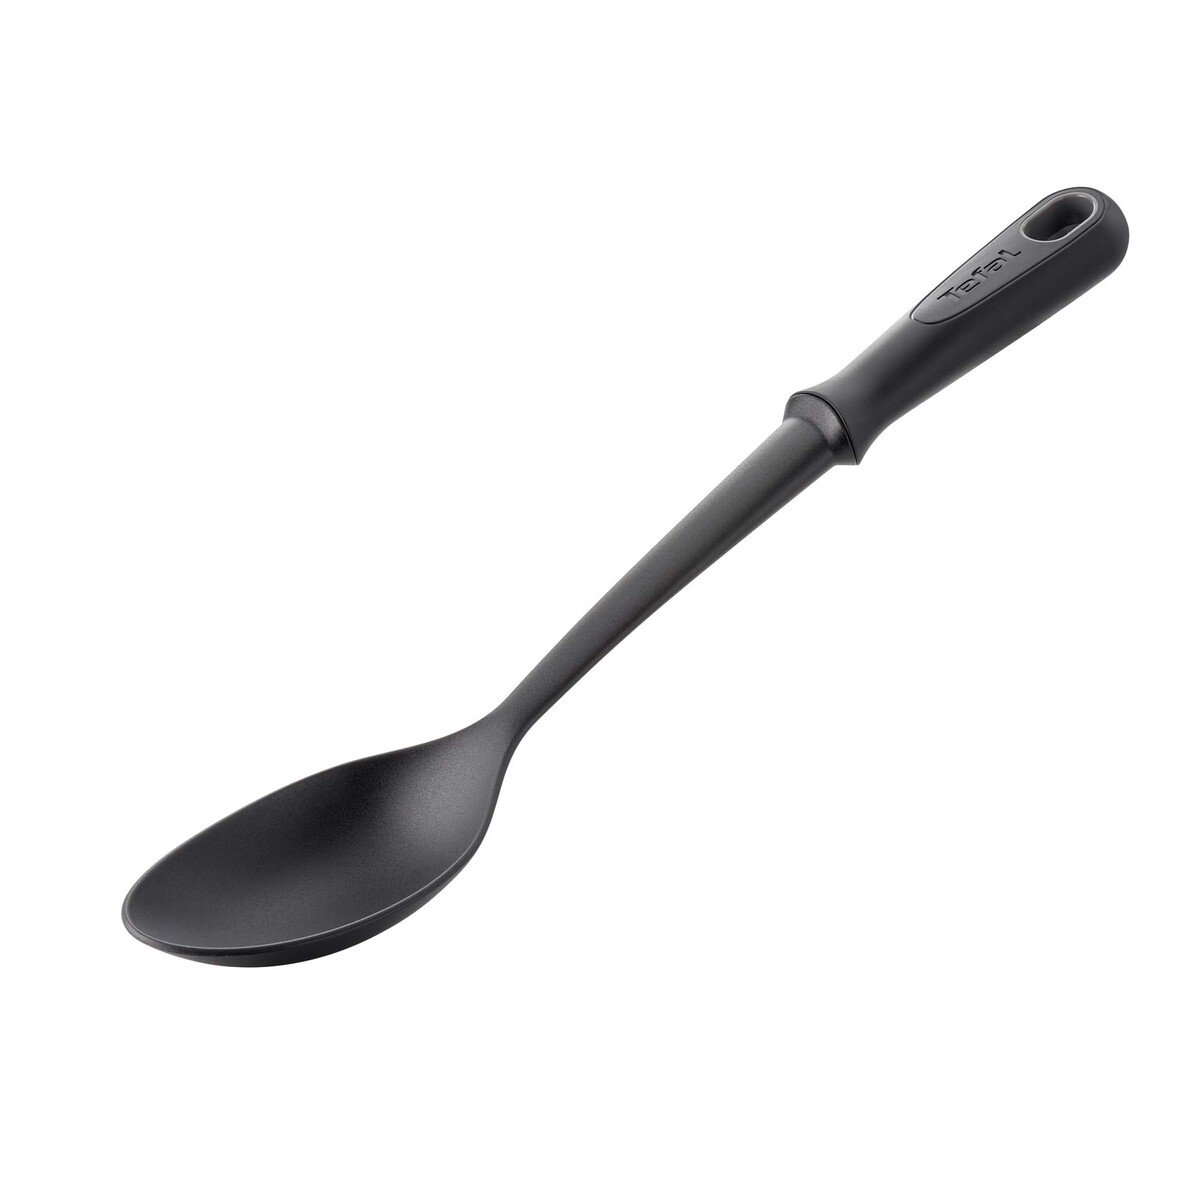 Tefal Aluminium Tawa with Spoon, 30 cm